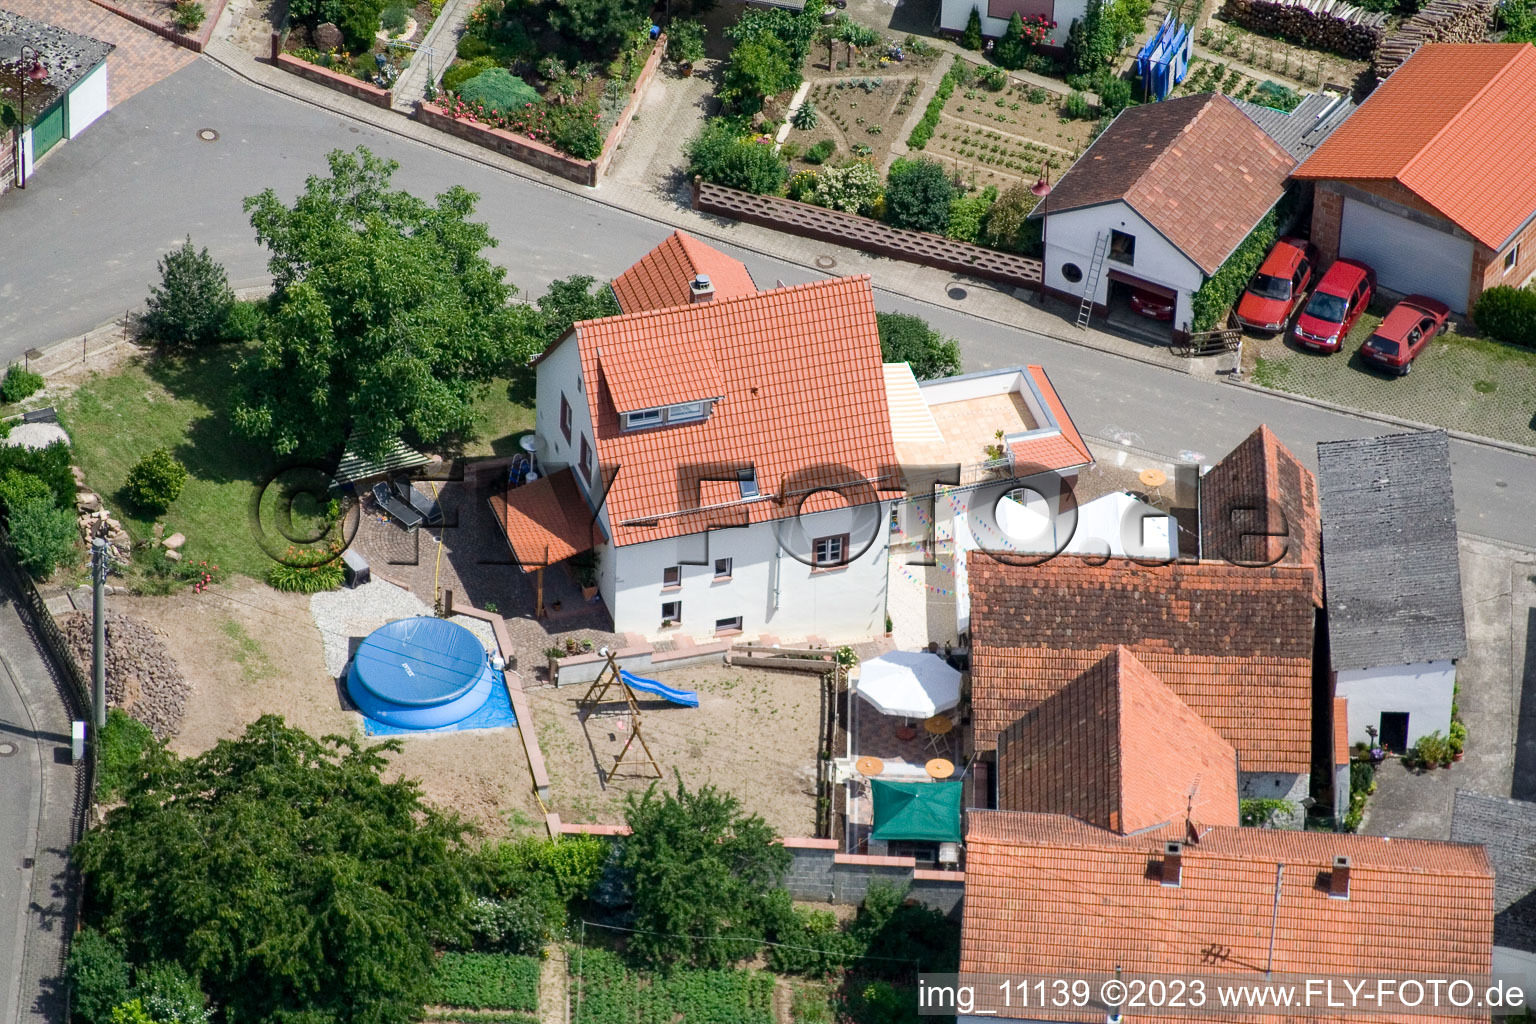 Aerial photograpy of District Rechtenbach in Schweigen-Rechtenbach in the state Rhineland-Palatinate, Germany